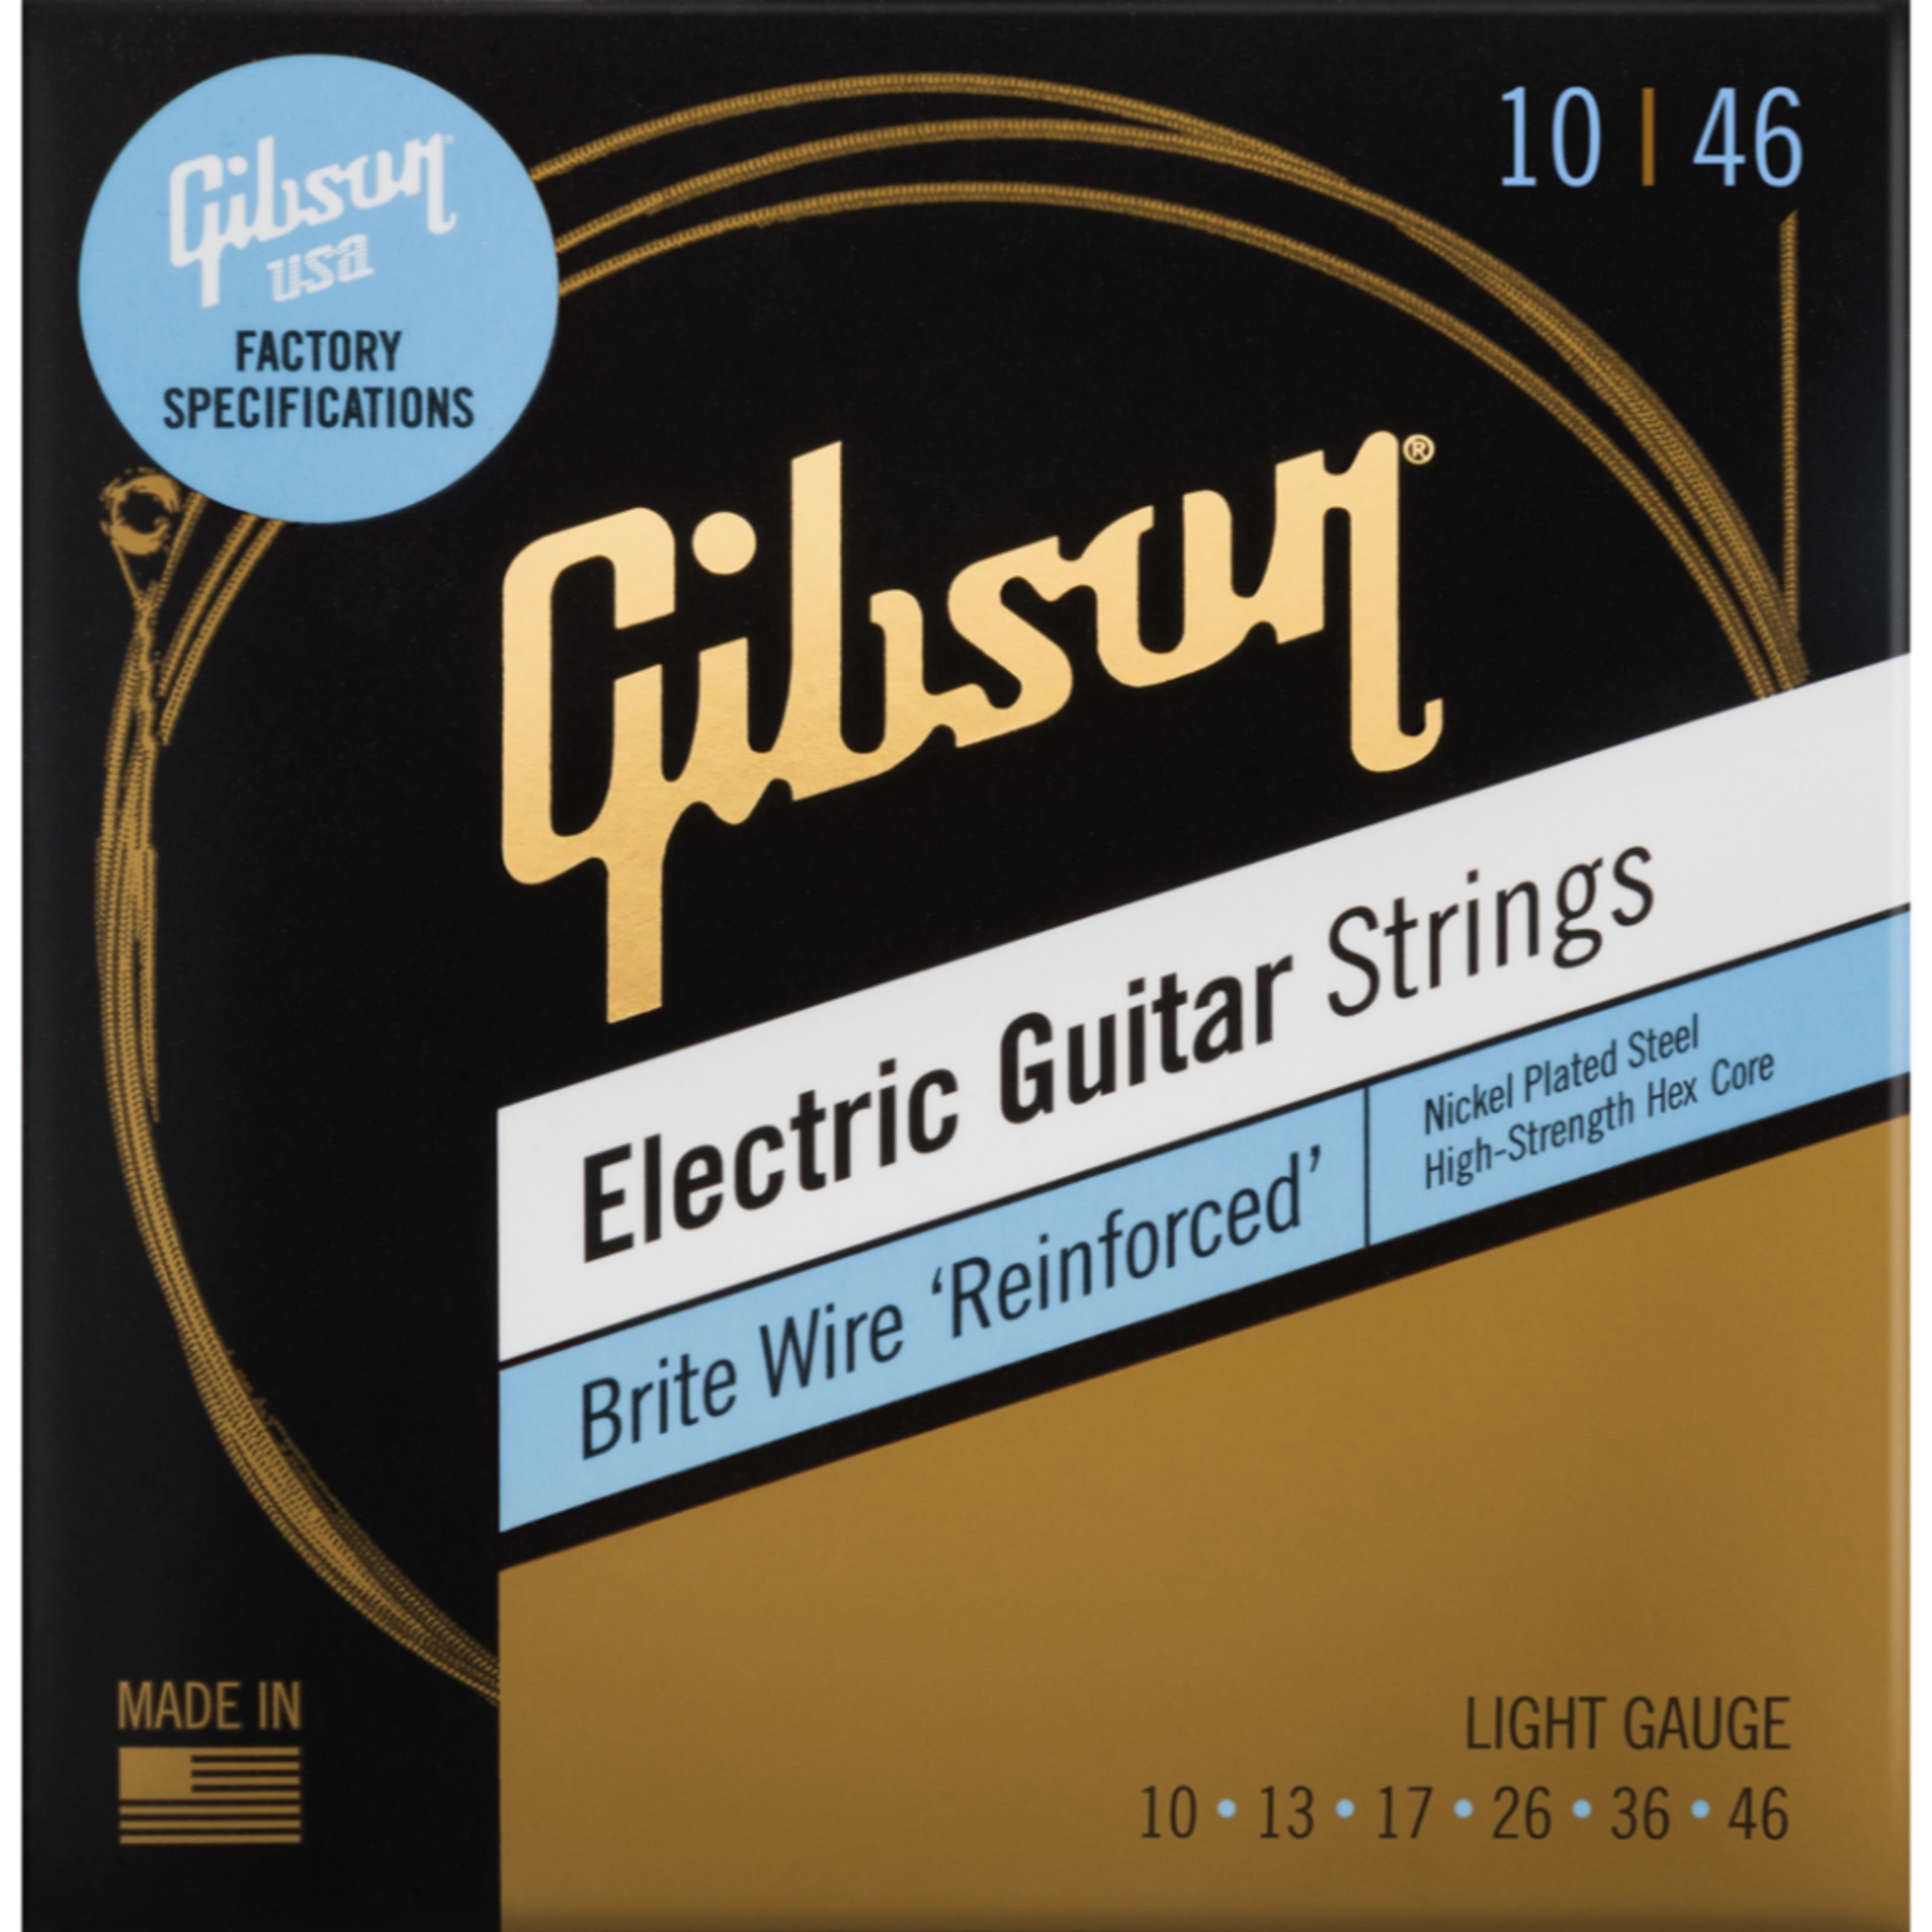 Gibson Spielzeug-Musikinstrument, SEG-BWR10 10-46 Wire E-Gitarrensaiten Brite - Reinforced